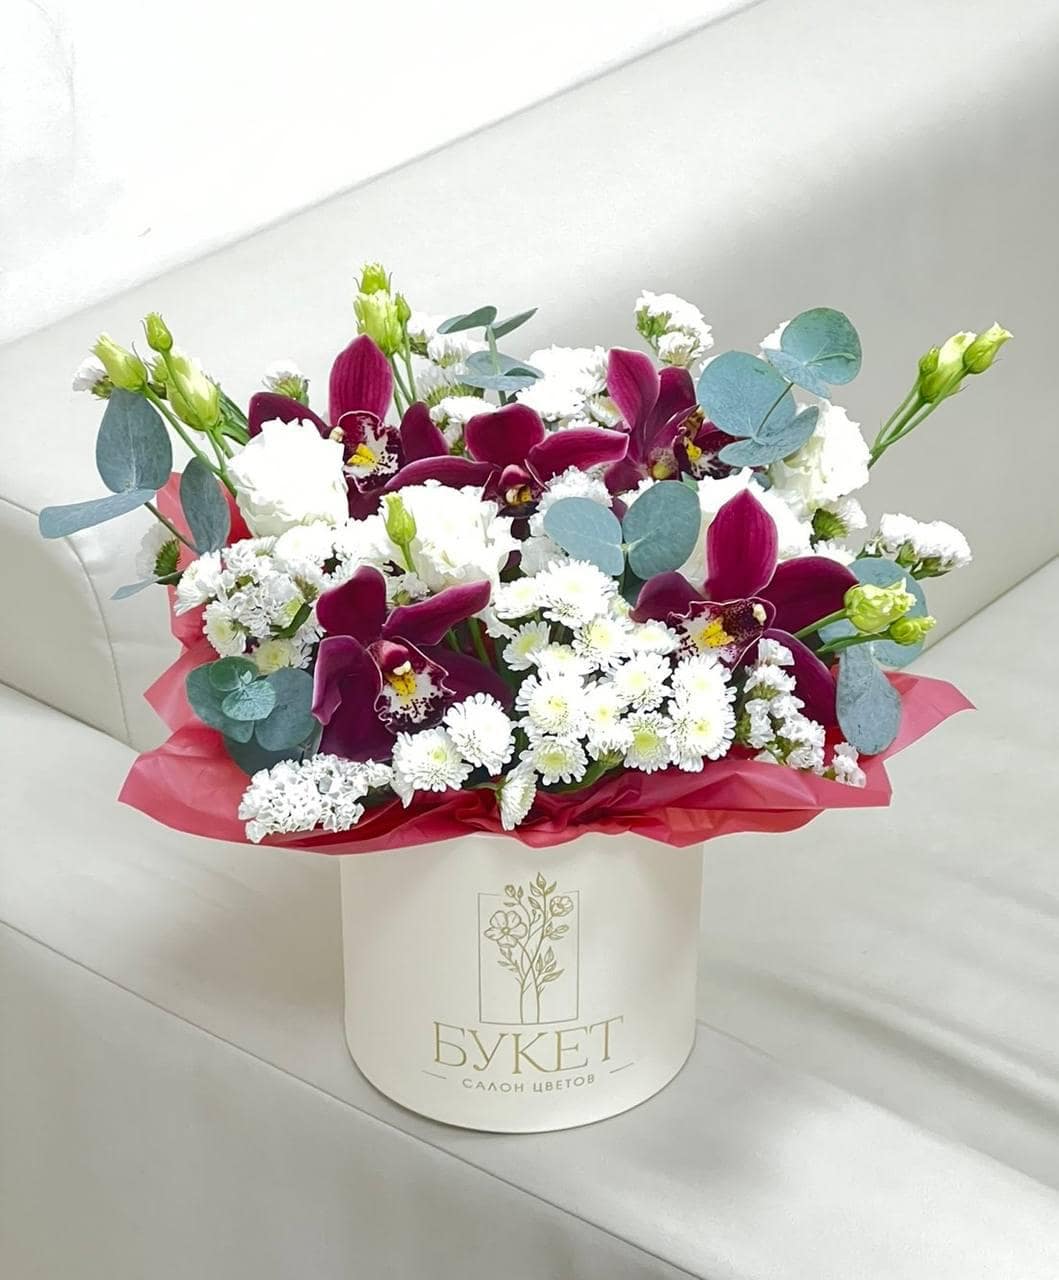  Цветочная композиция с орхидеями, эустомой, веточками хризантемы. Букет в шляпной коробке с доставкой